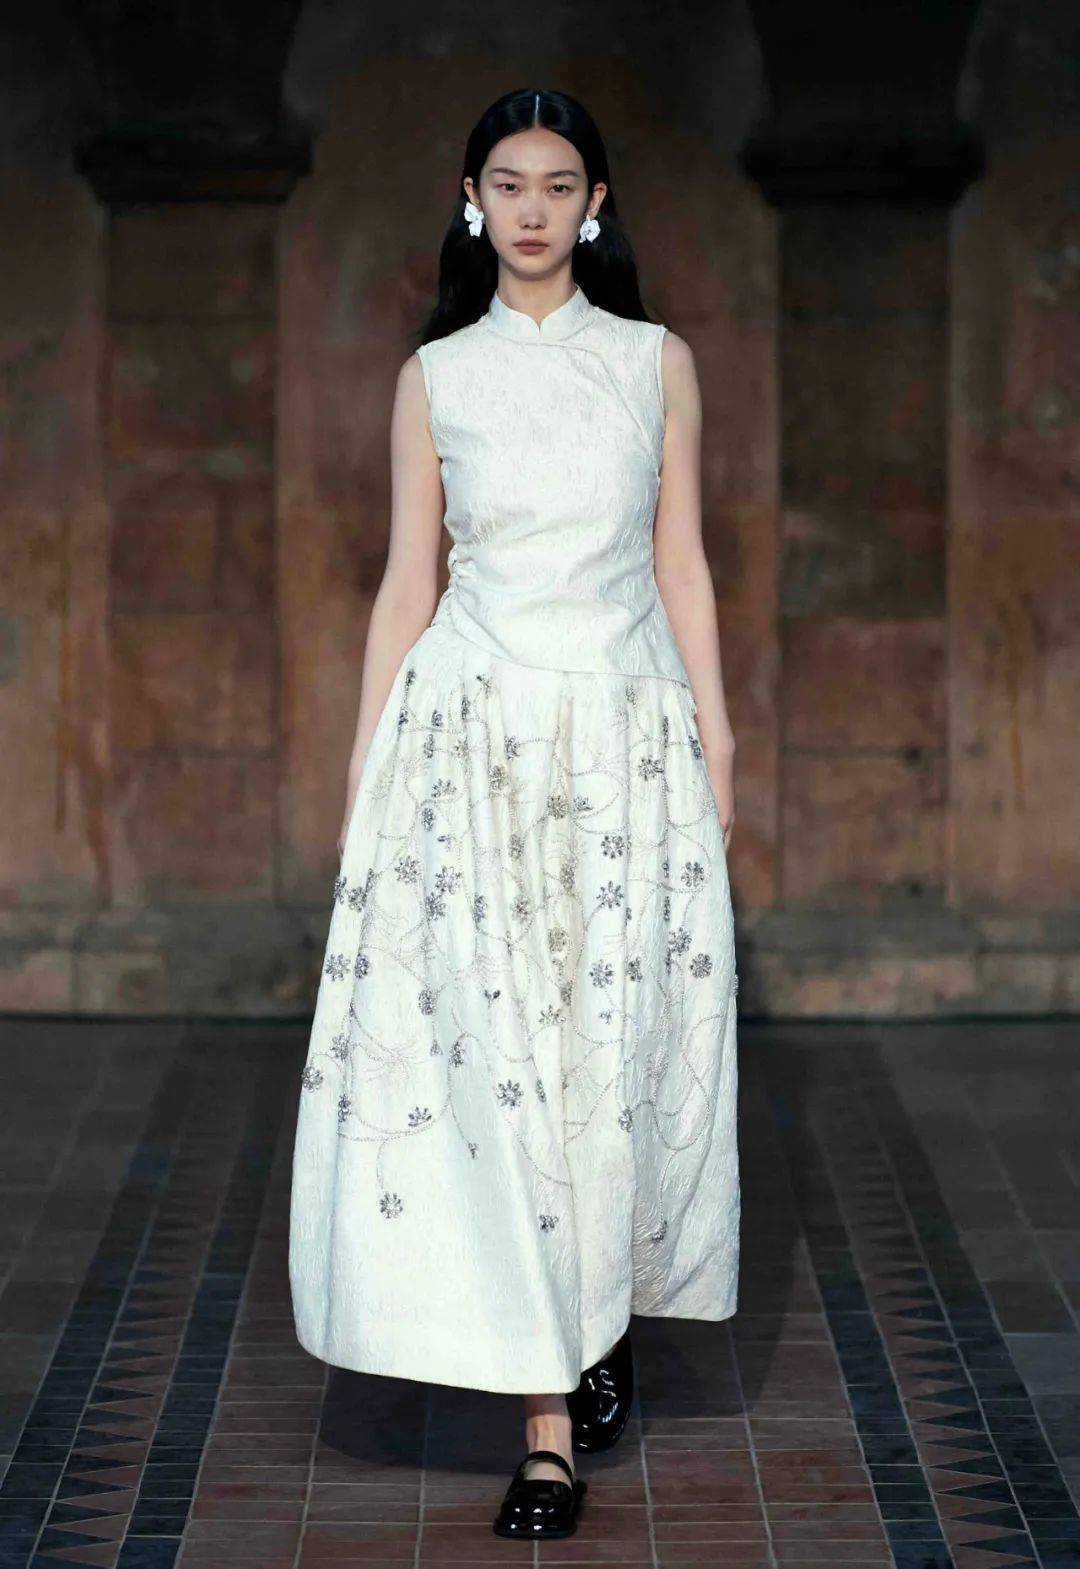 出一批批优秀的中国设计师,她们不断探索传统服饰和现代服饰的可能性